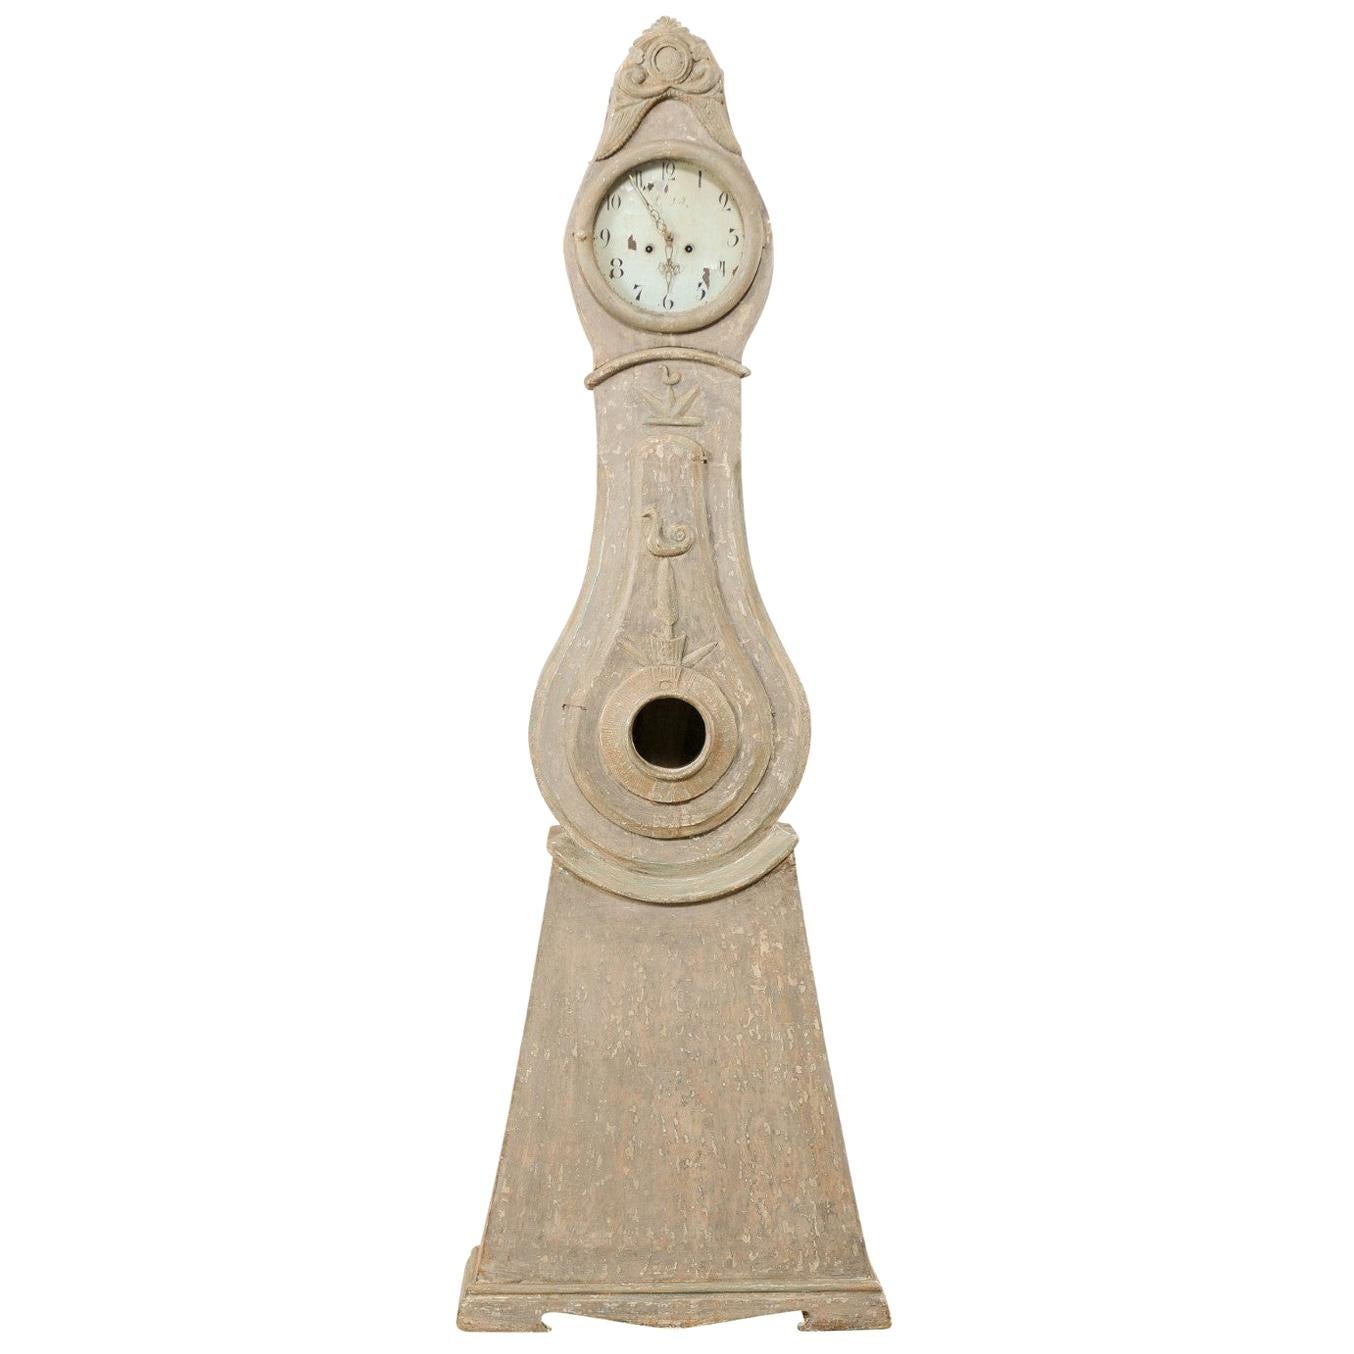 Horloge de parquet du nord de la Suède avec de jolis accents sculptés:: début du 19e siècle